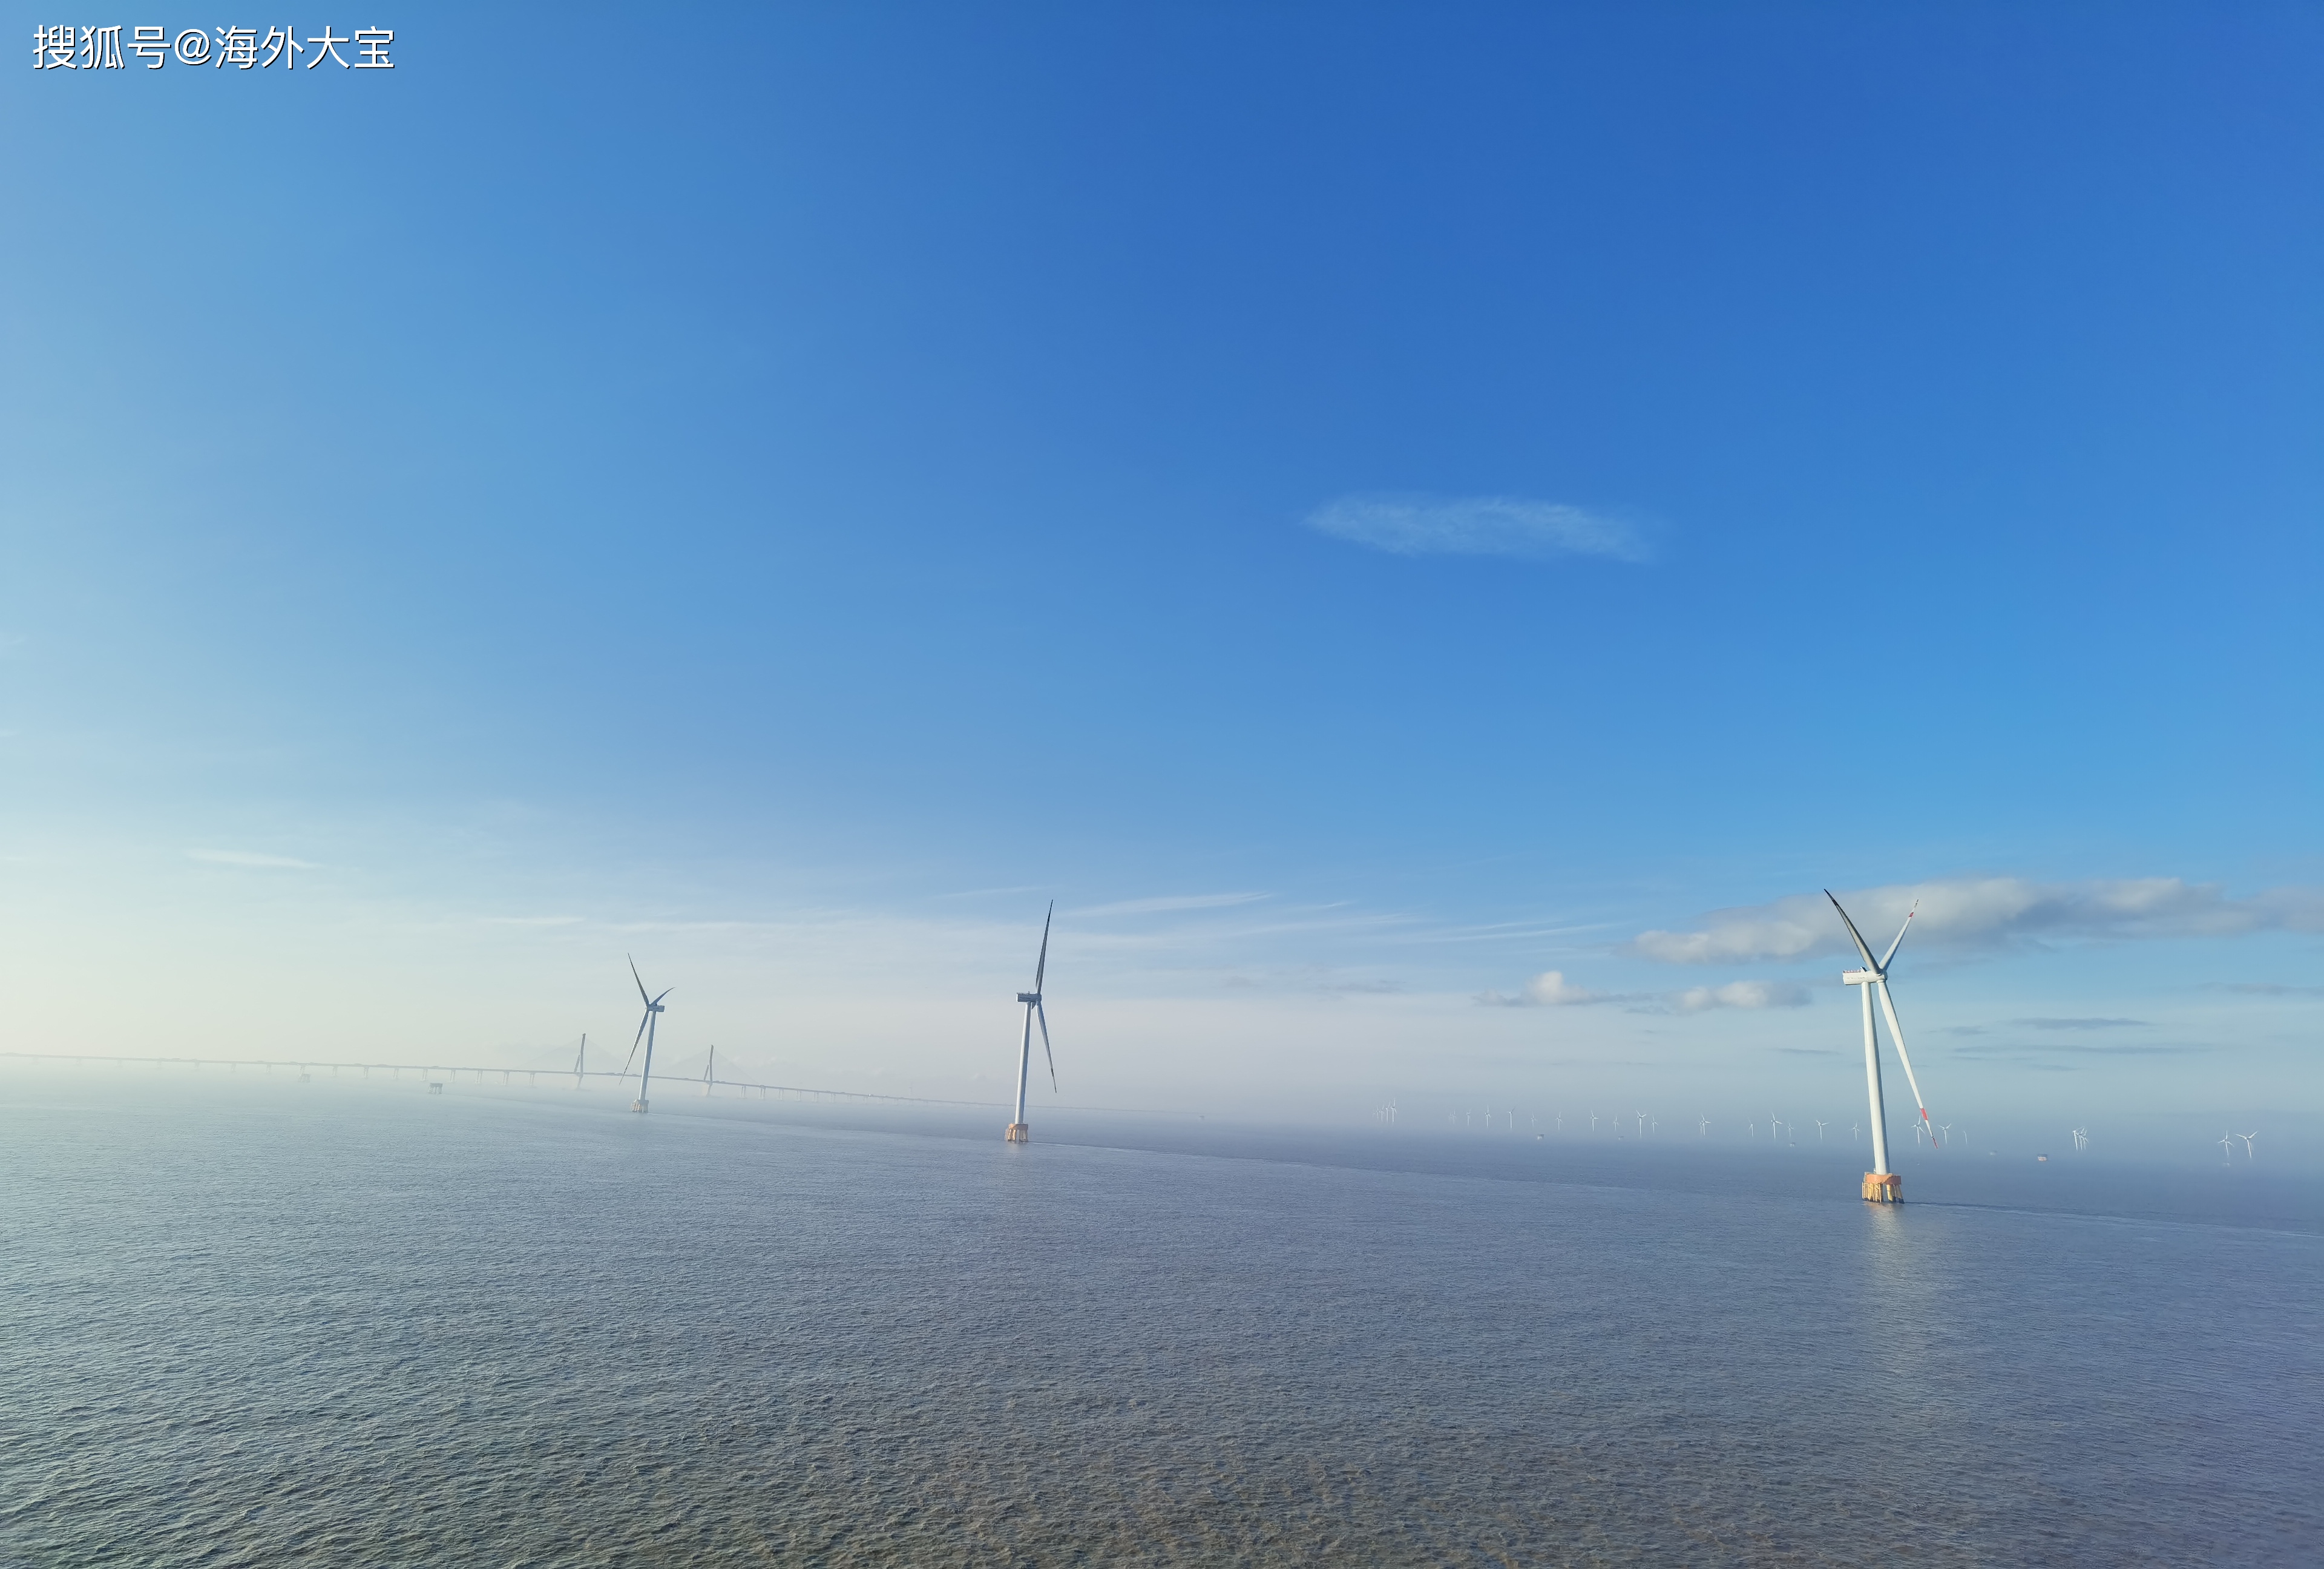 海上风电新能源的下一个风口